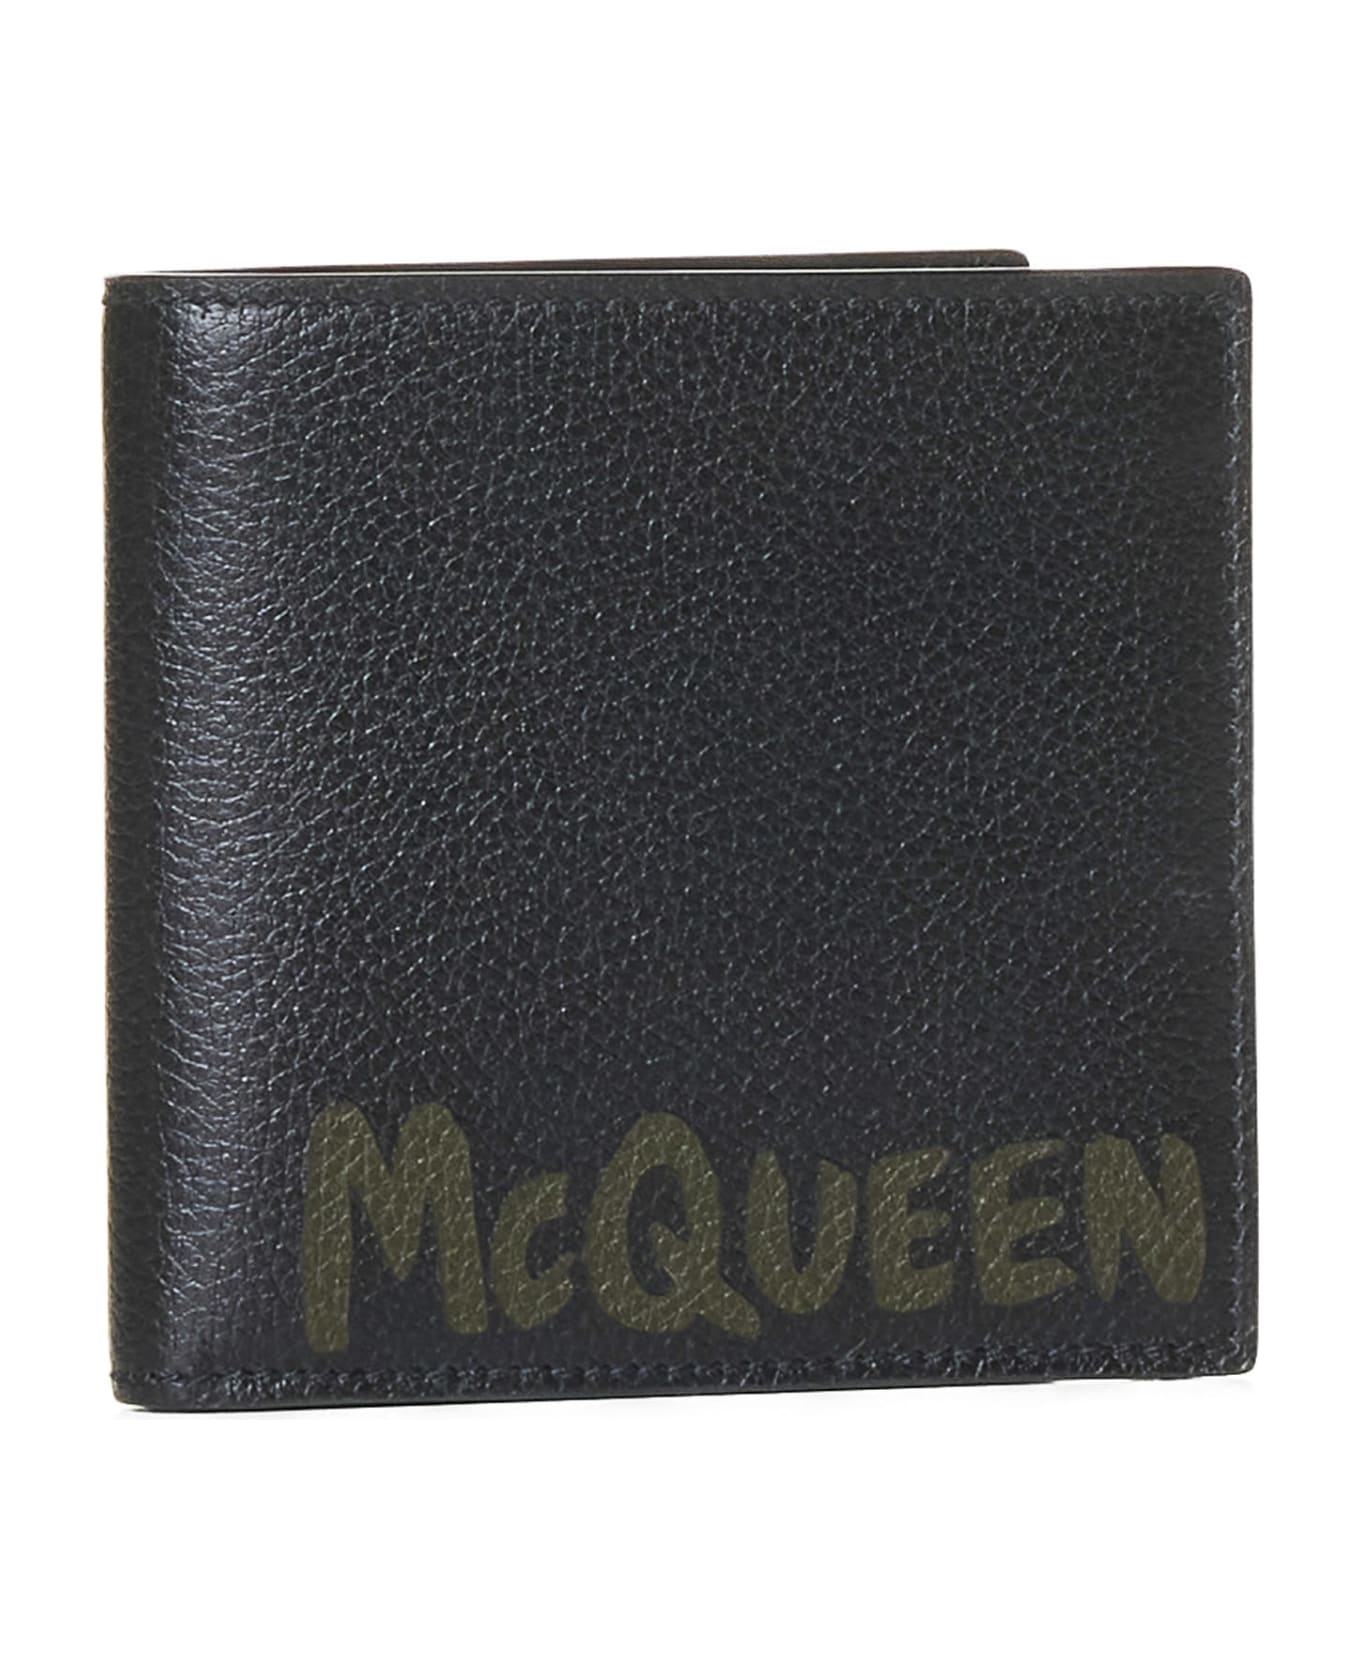 Alexander McQueen Calfskin Wallet - Black/khaki